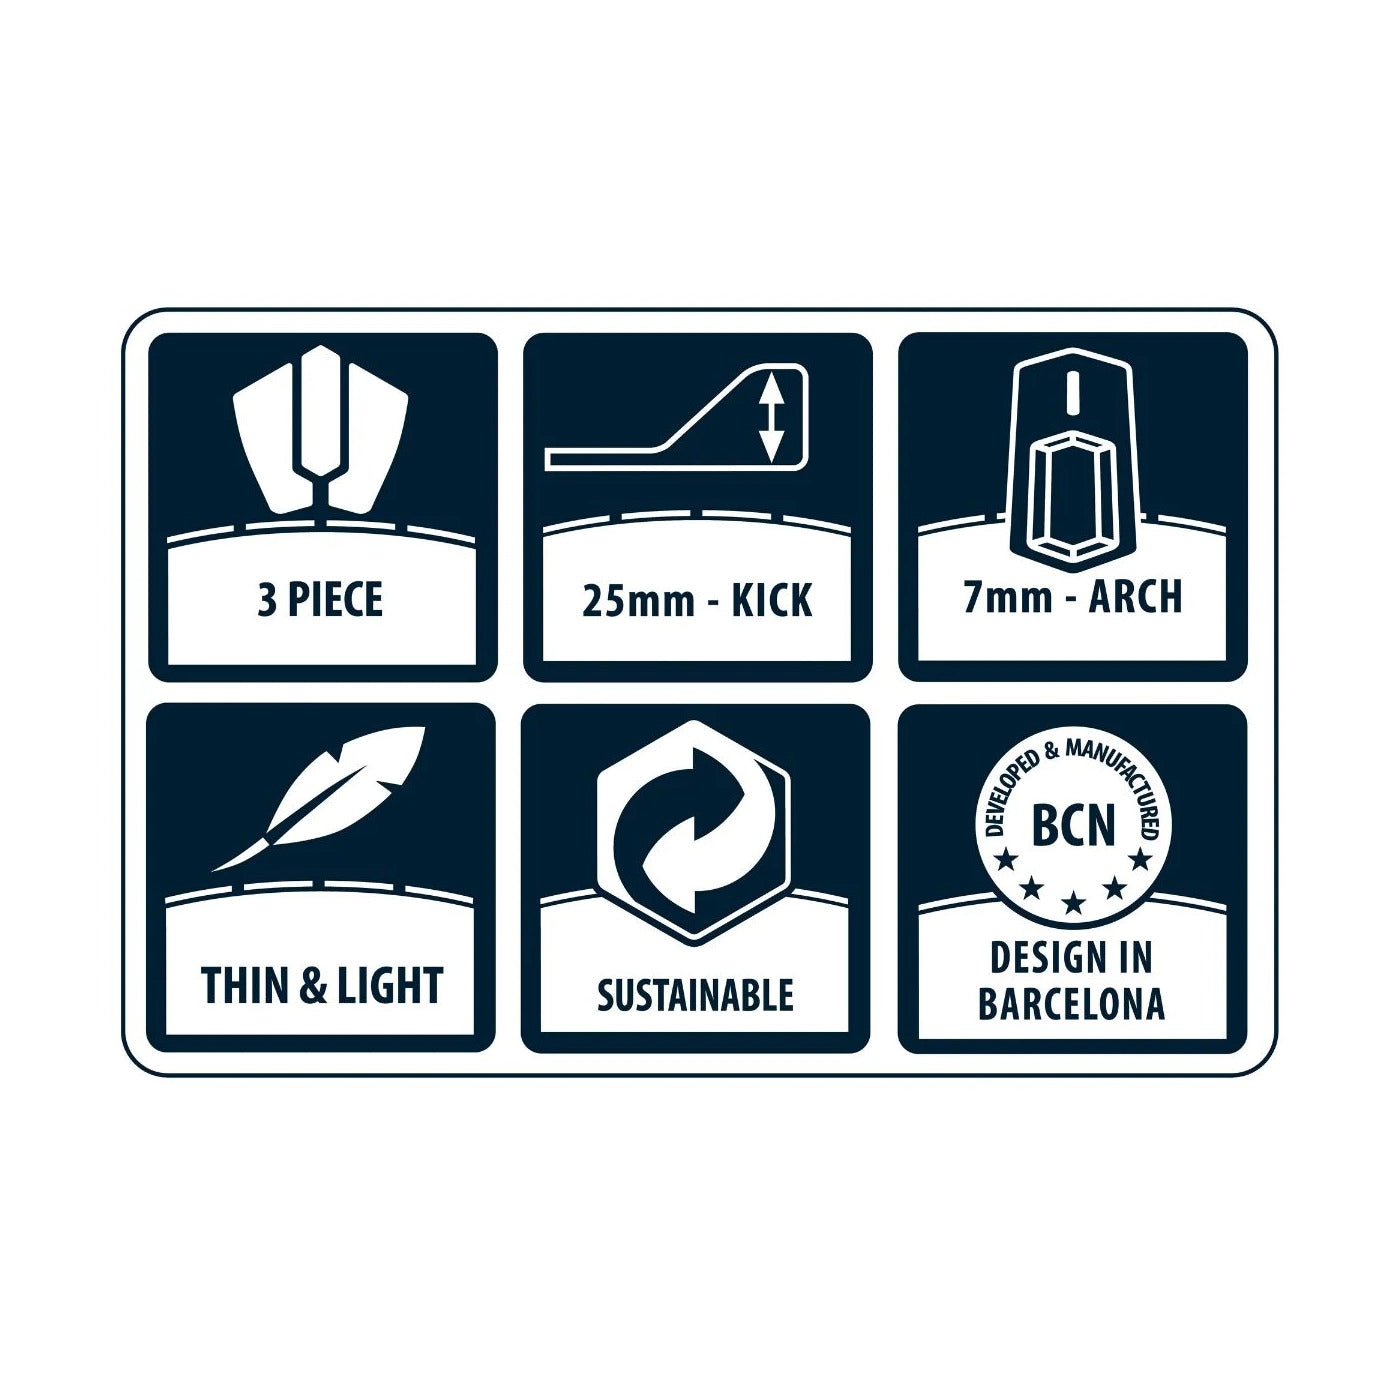 Eigenschaften beschrieben in Icons des Kork Tail Pad RSPro Tail Grip Cork.